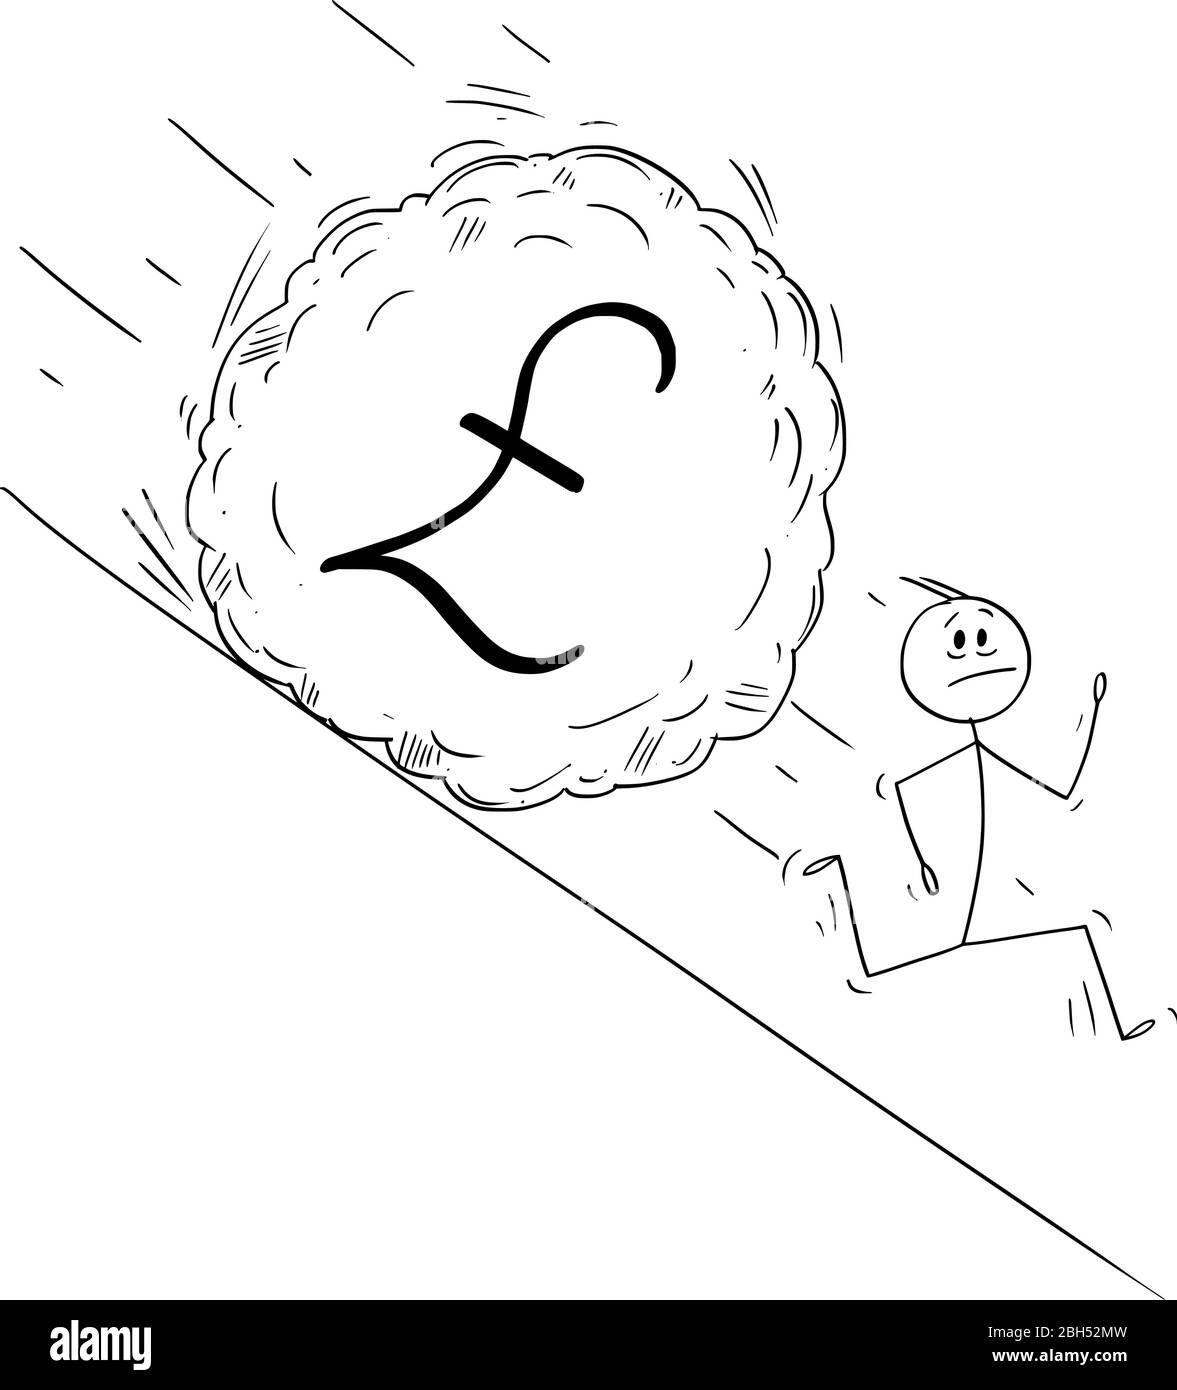 Vektor Cartoon Stick Figur Zeichnung konzeptionelle Illustration von gestressten Mann oder Geschäftsmann, der weg von Boulder rollt Hügel hinunter. Finanzkonzept des fallenden Pfund Sterling oder gbp Währung. Stock Vektor